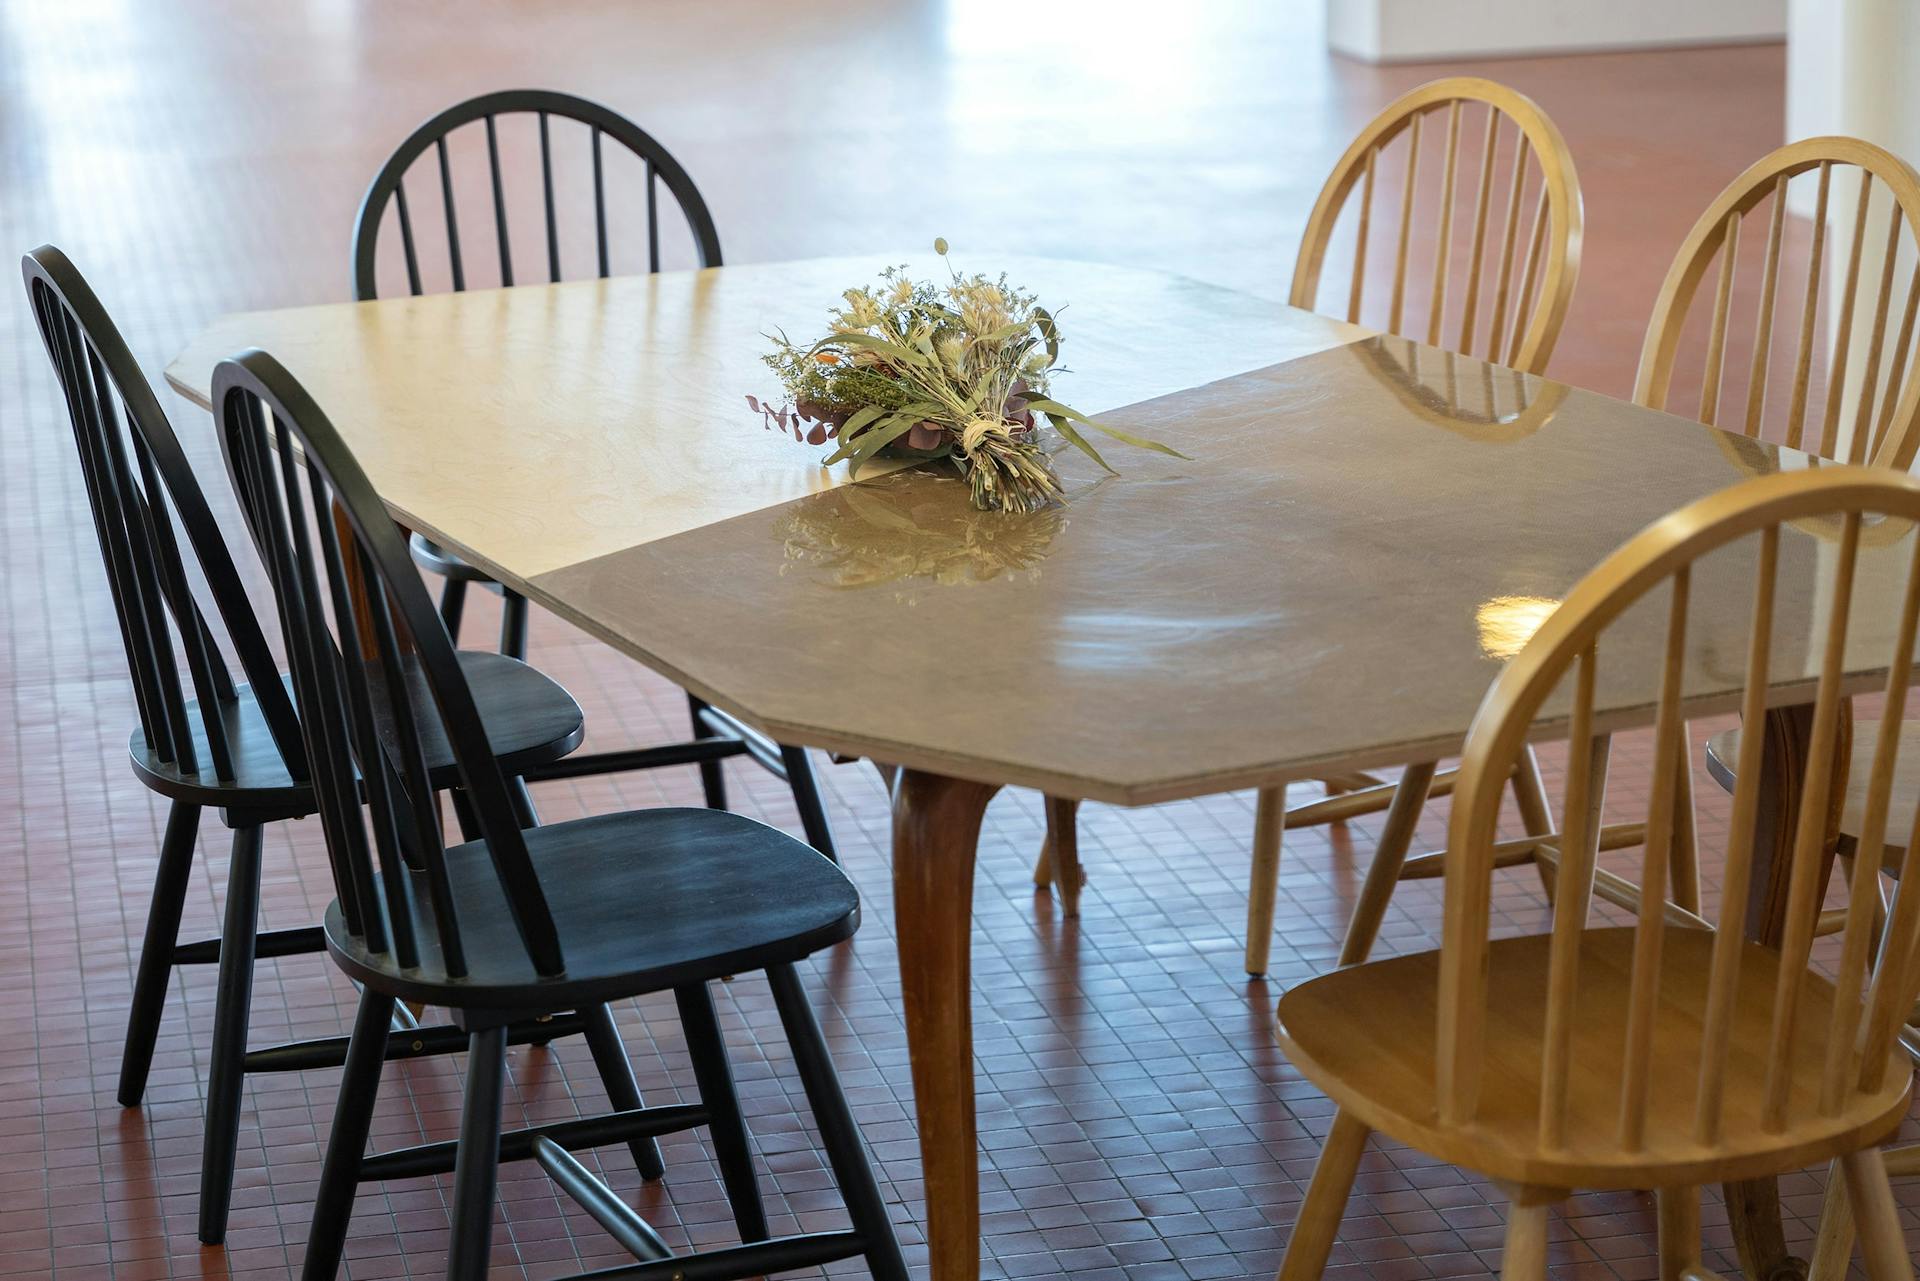 Une table en bois accompagnée de chaise issues de la scénographie de Labo Diva.